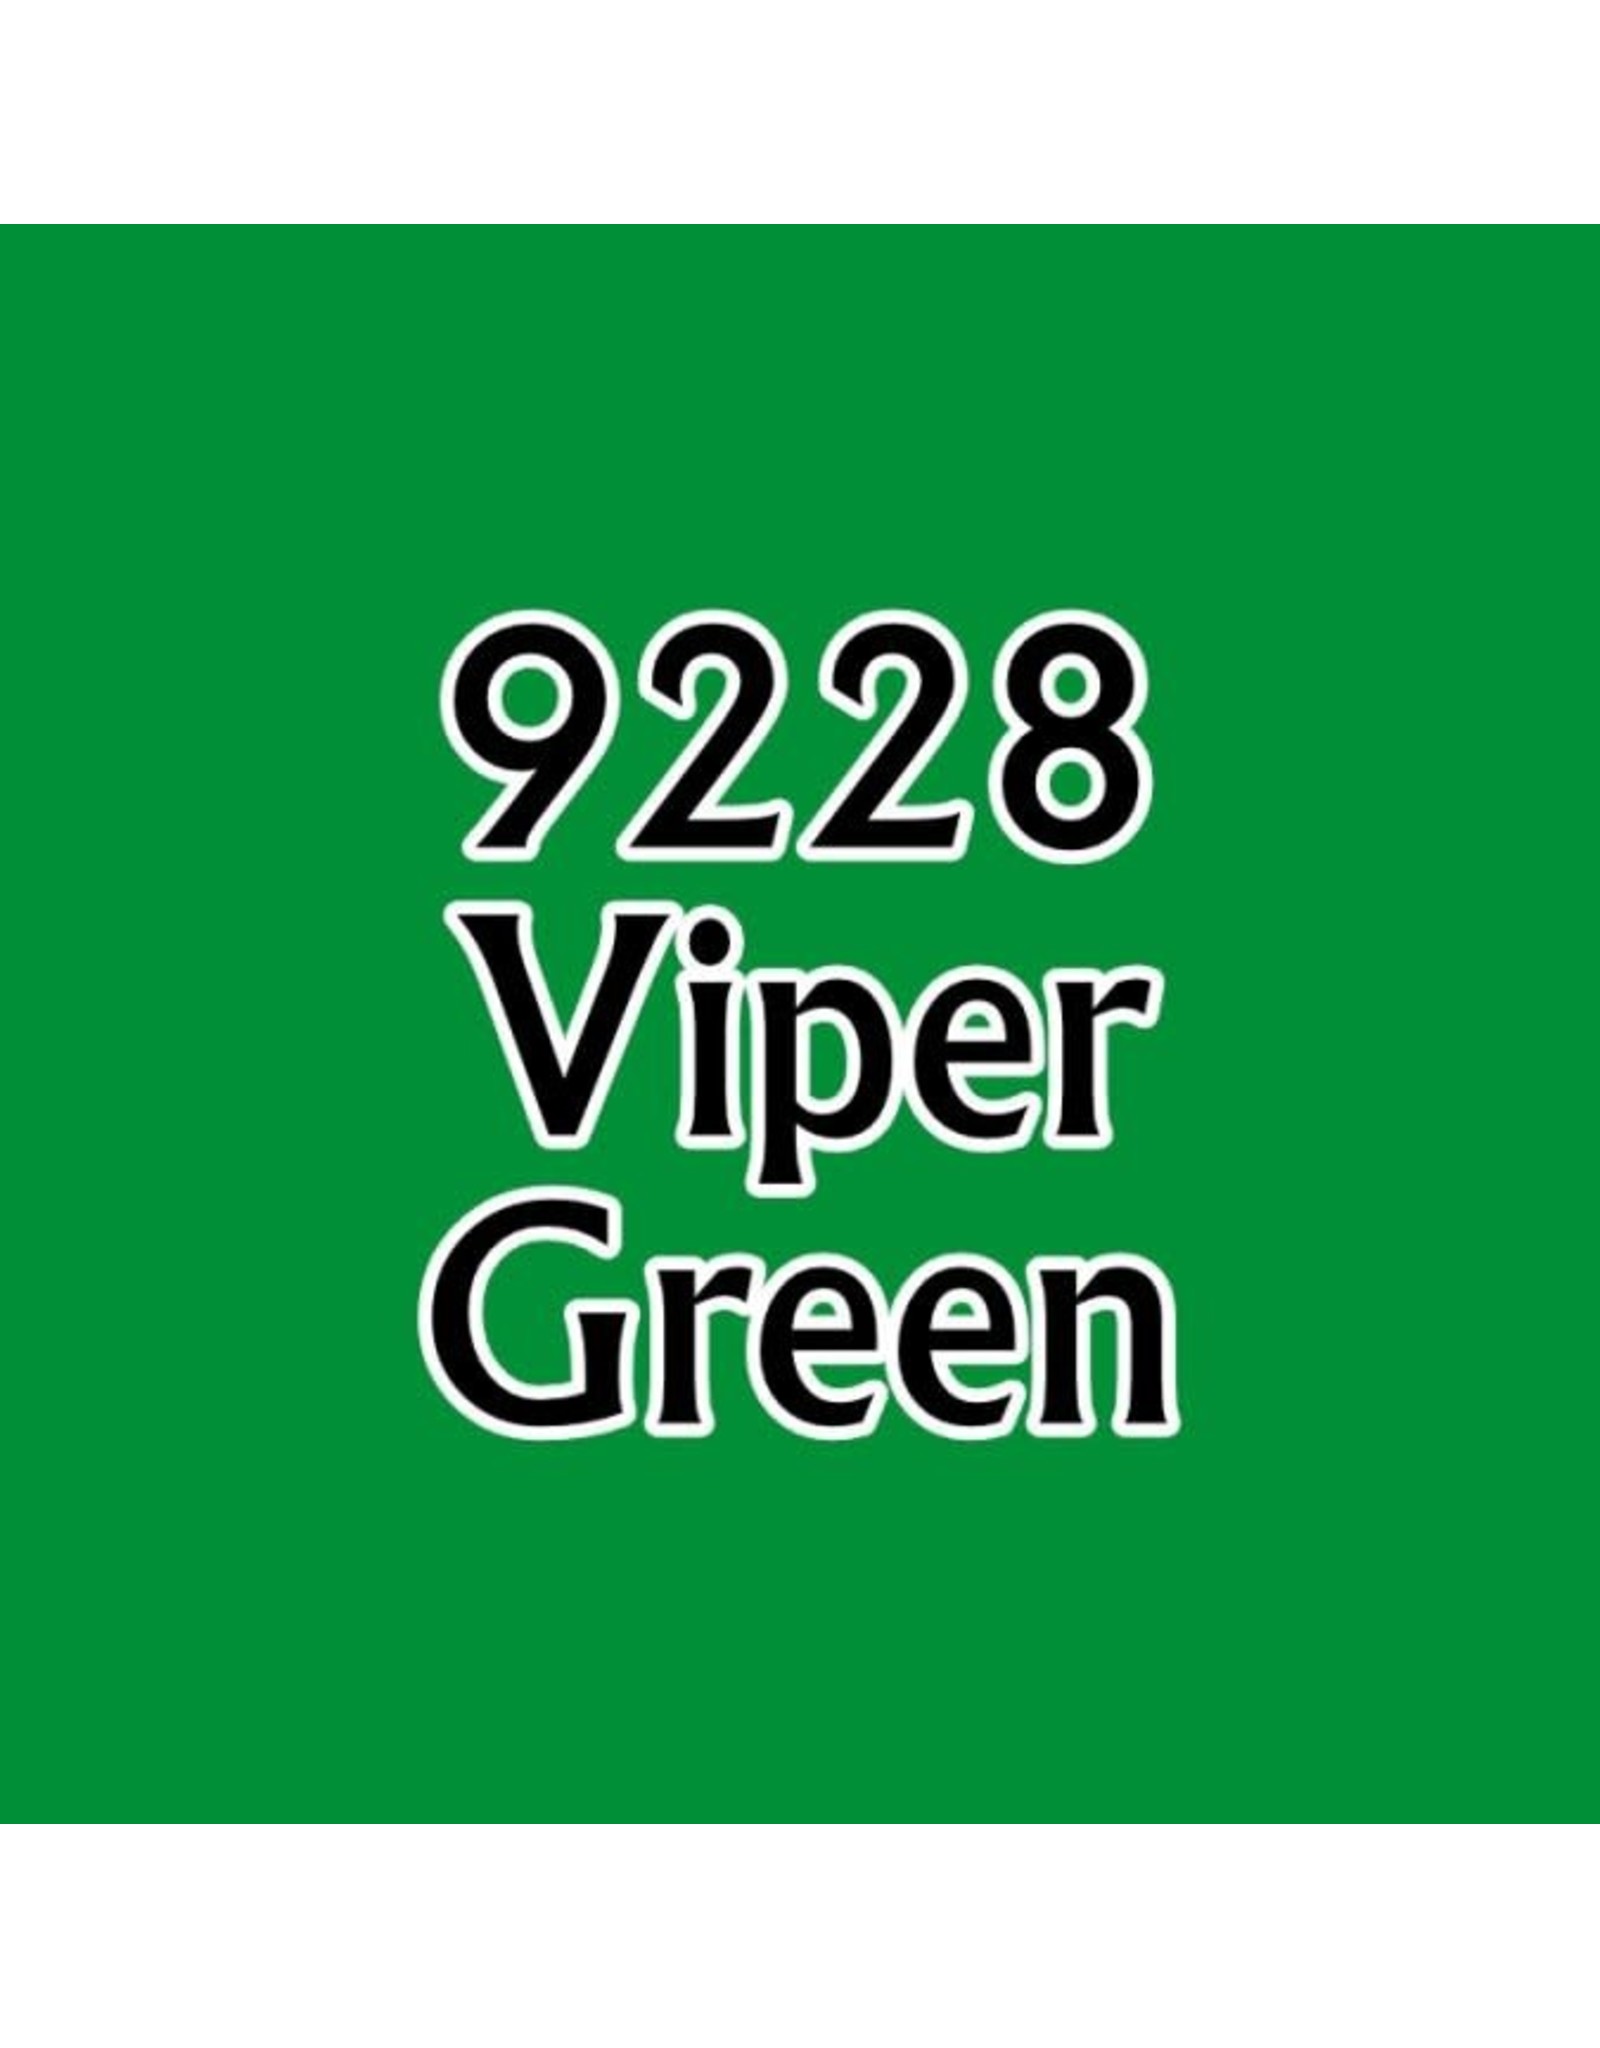 Reaper Viper Green